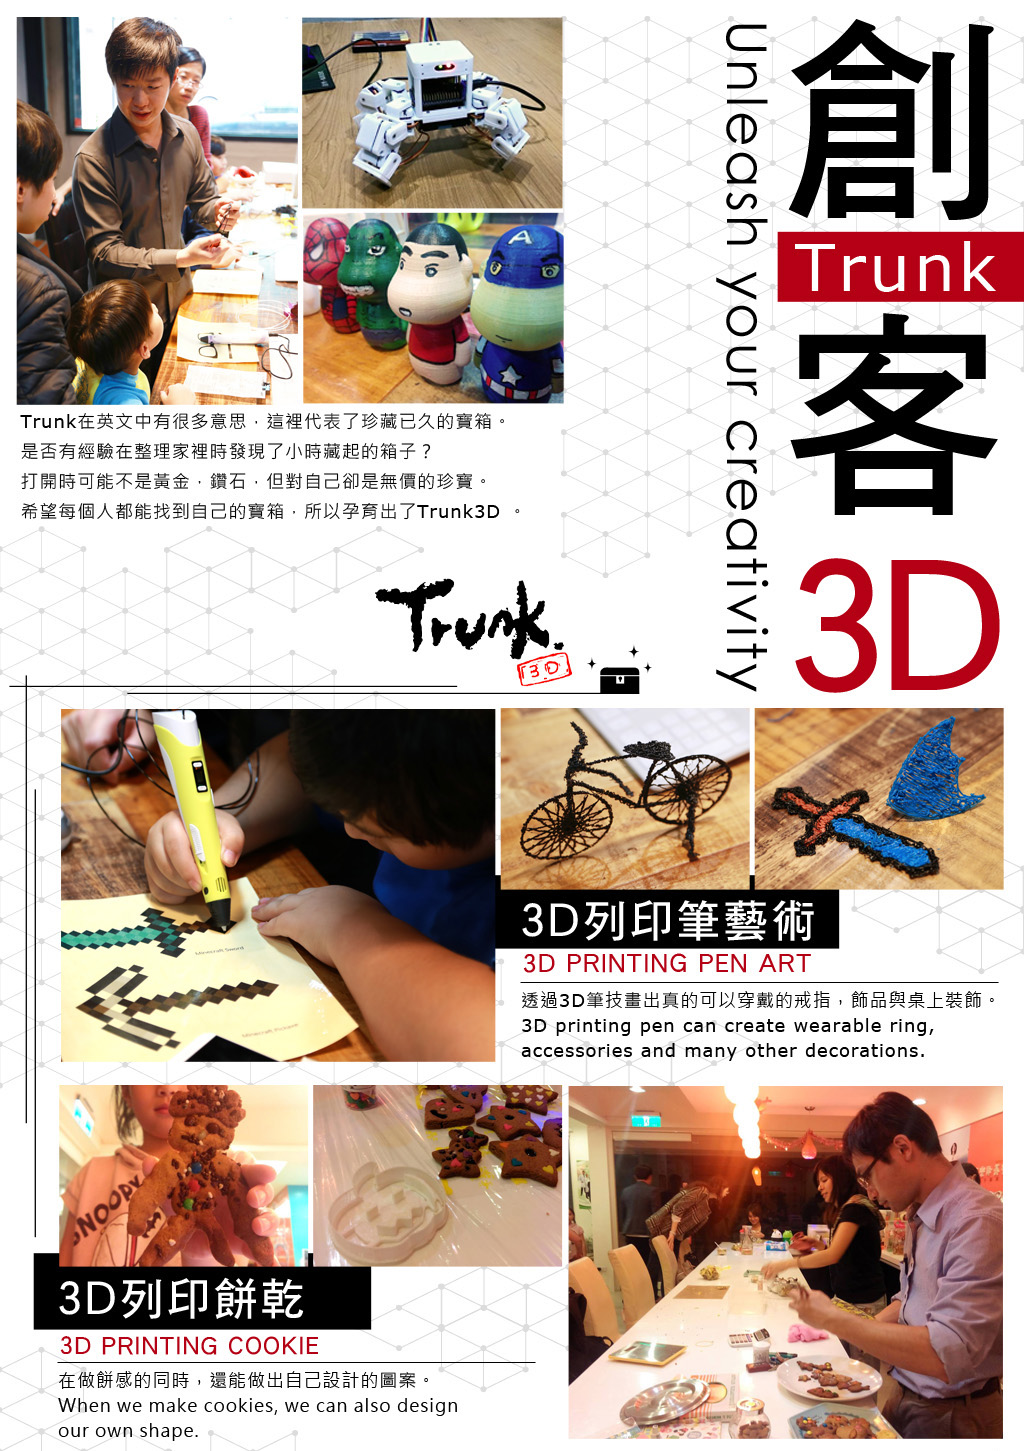 Trunk3D, 創客空間, 客製化商品, 產品設計, 待客成形